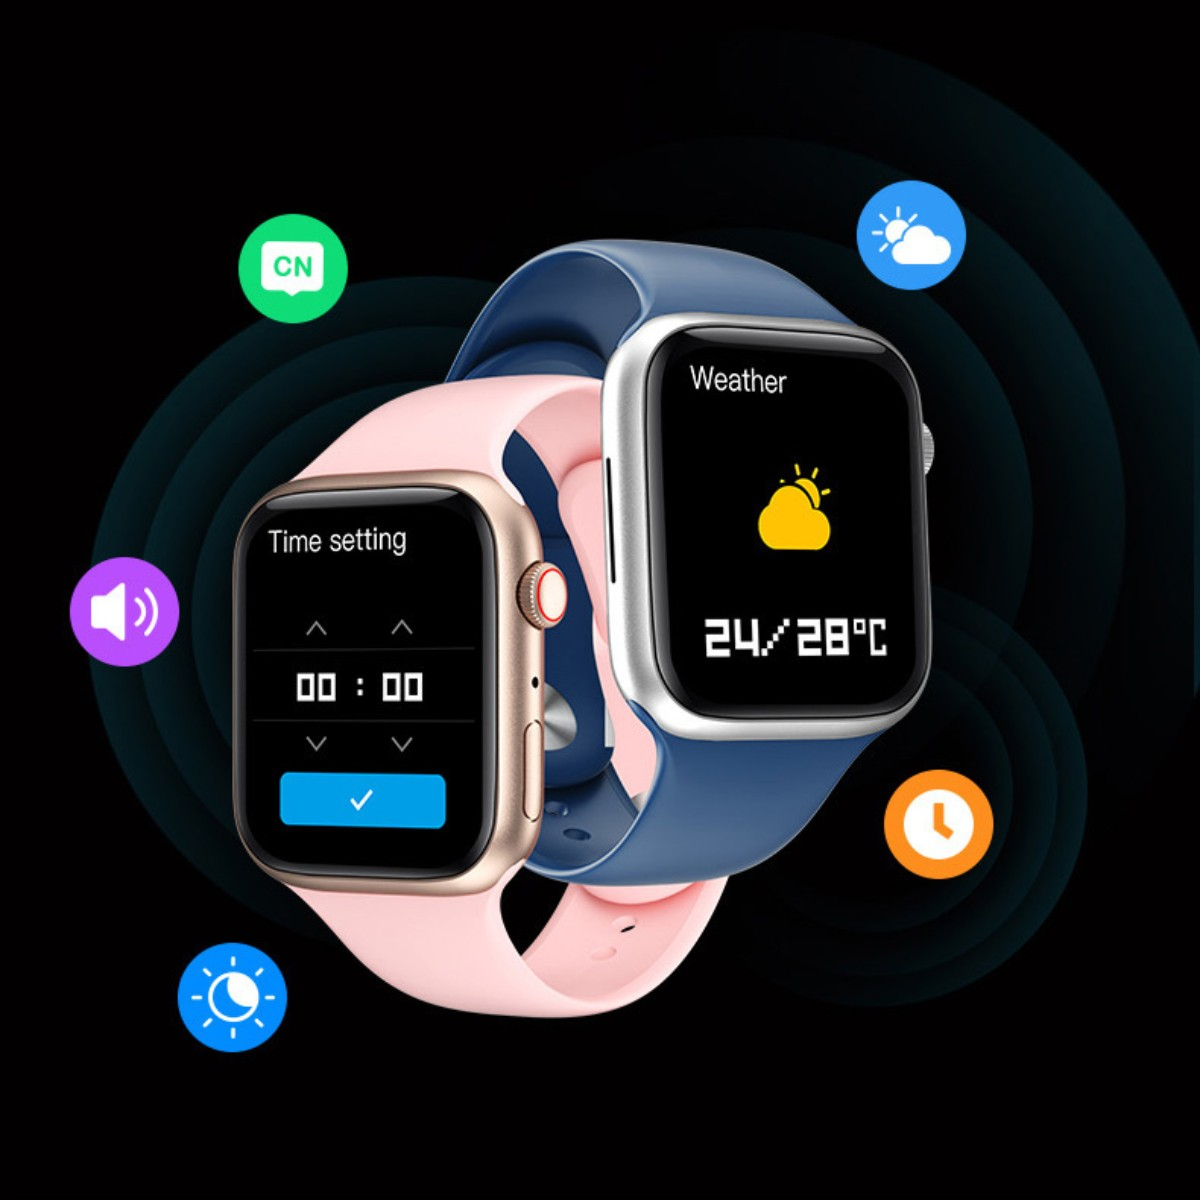 Bluetooth Pro Kunststoff Max Weiß - i8 mehrsprachig, Smartwatch wasserdicht, Smartwatch Silikon, Tasten ENBAOXIN Talk, zwei